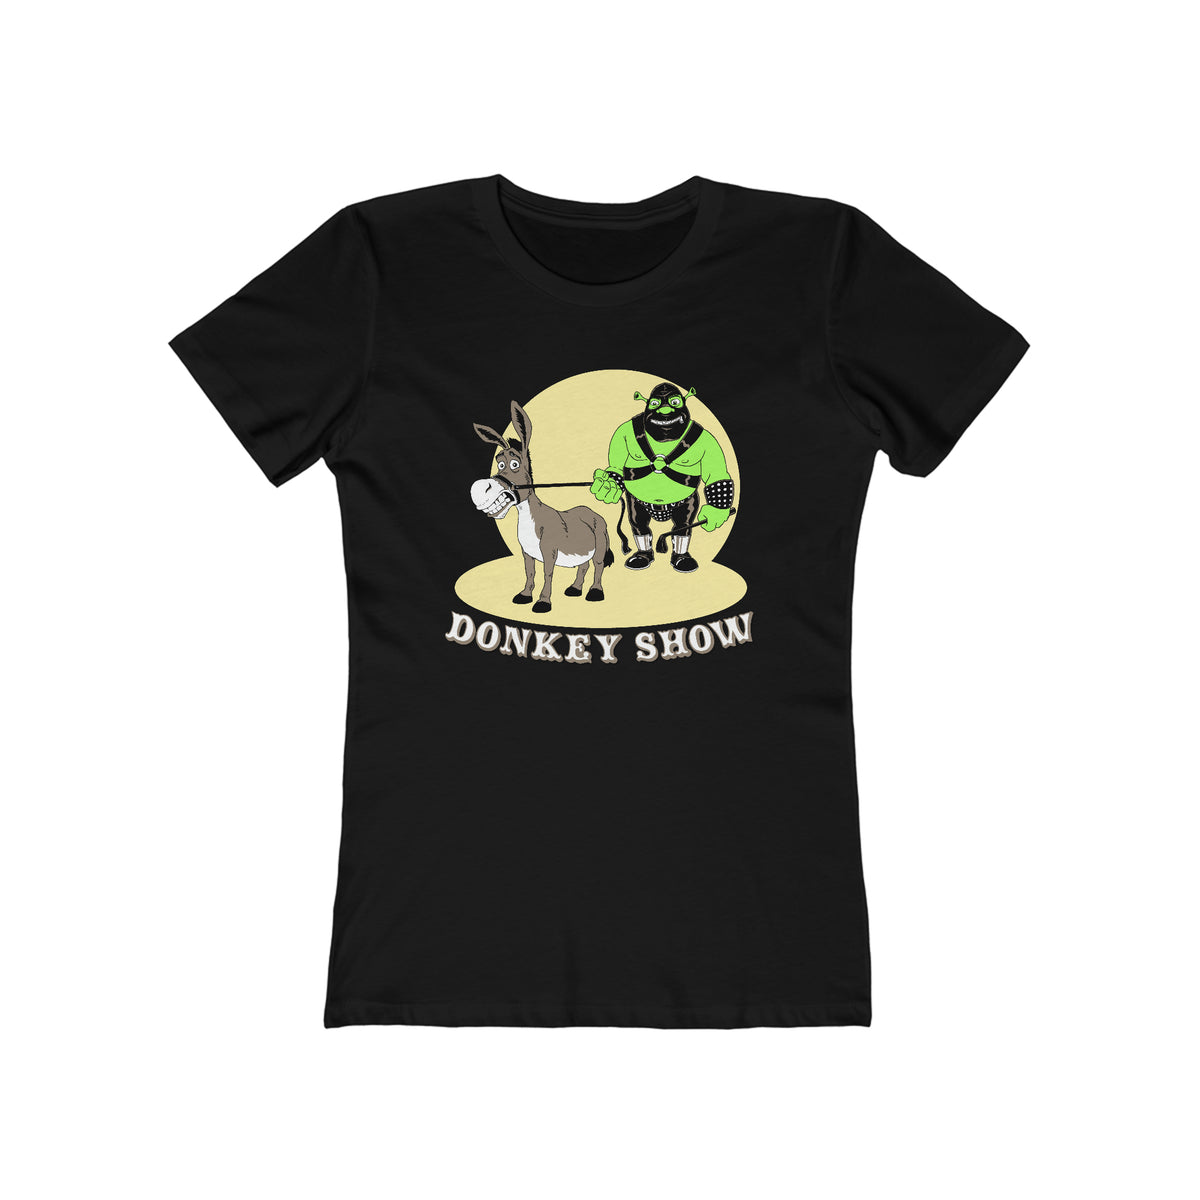 Donkey Show - Women’s T-Shirt